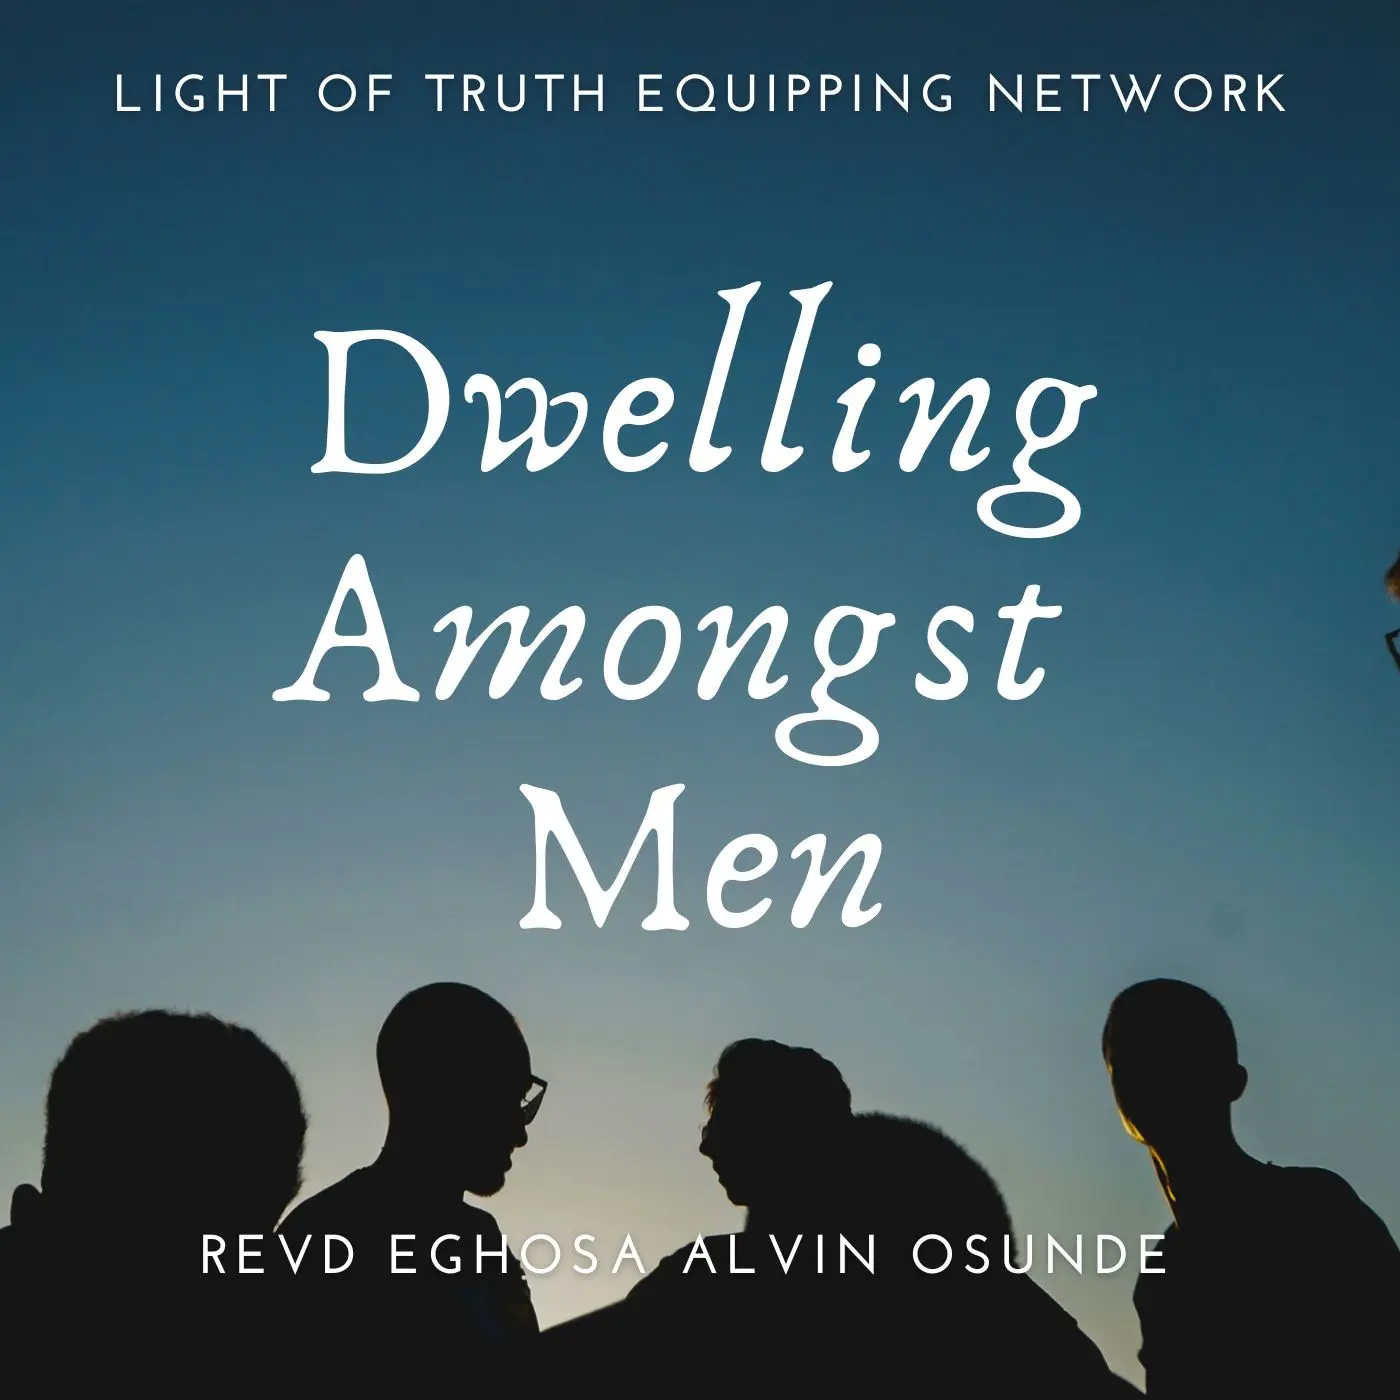 Dwelling amongst men